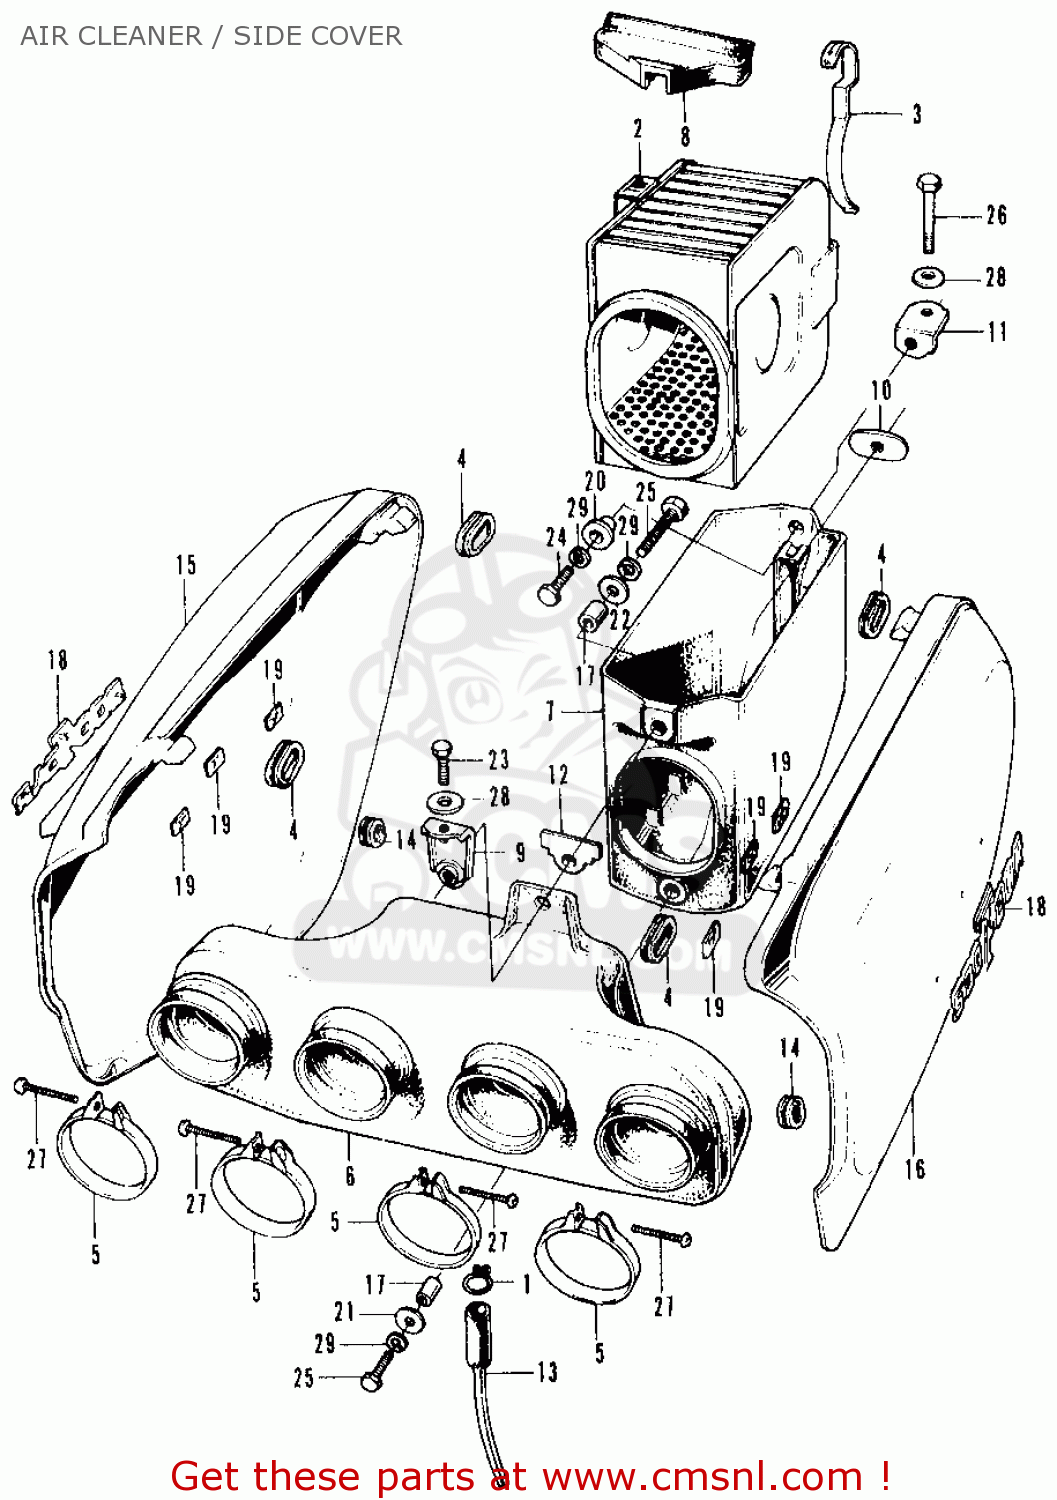 1972 Honda cb500 parts #7